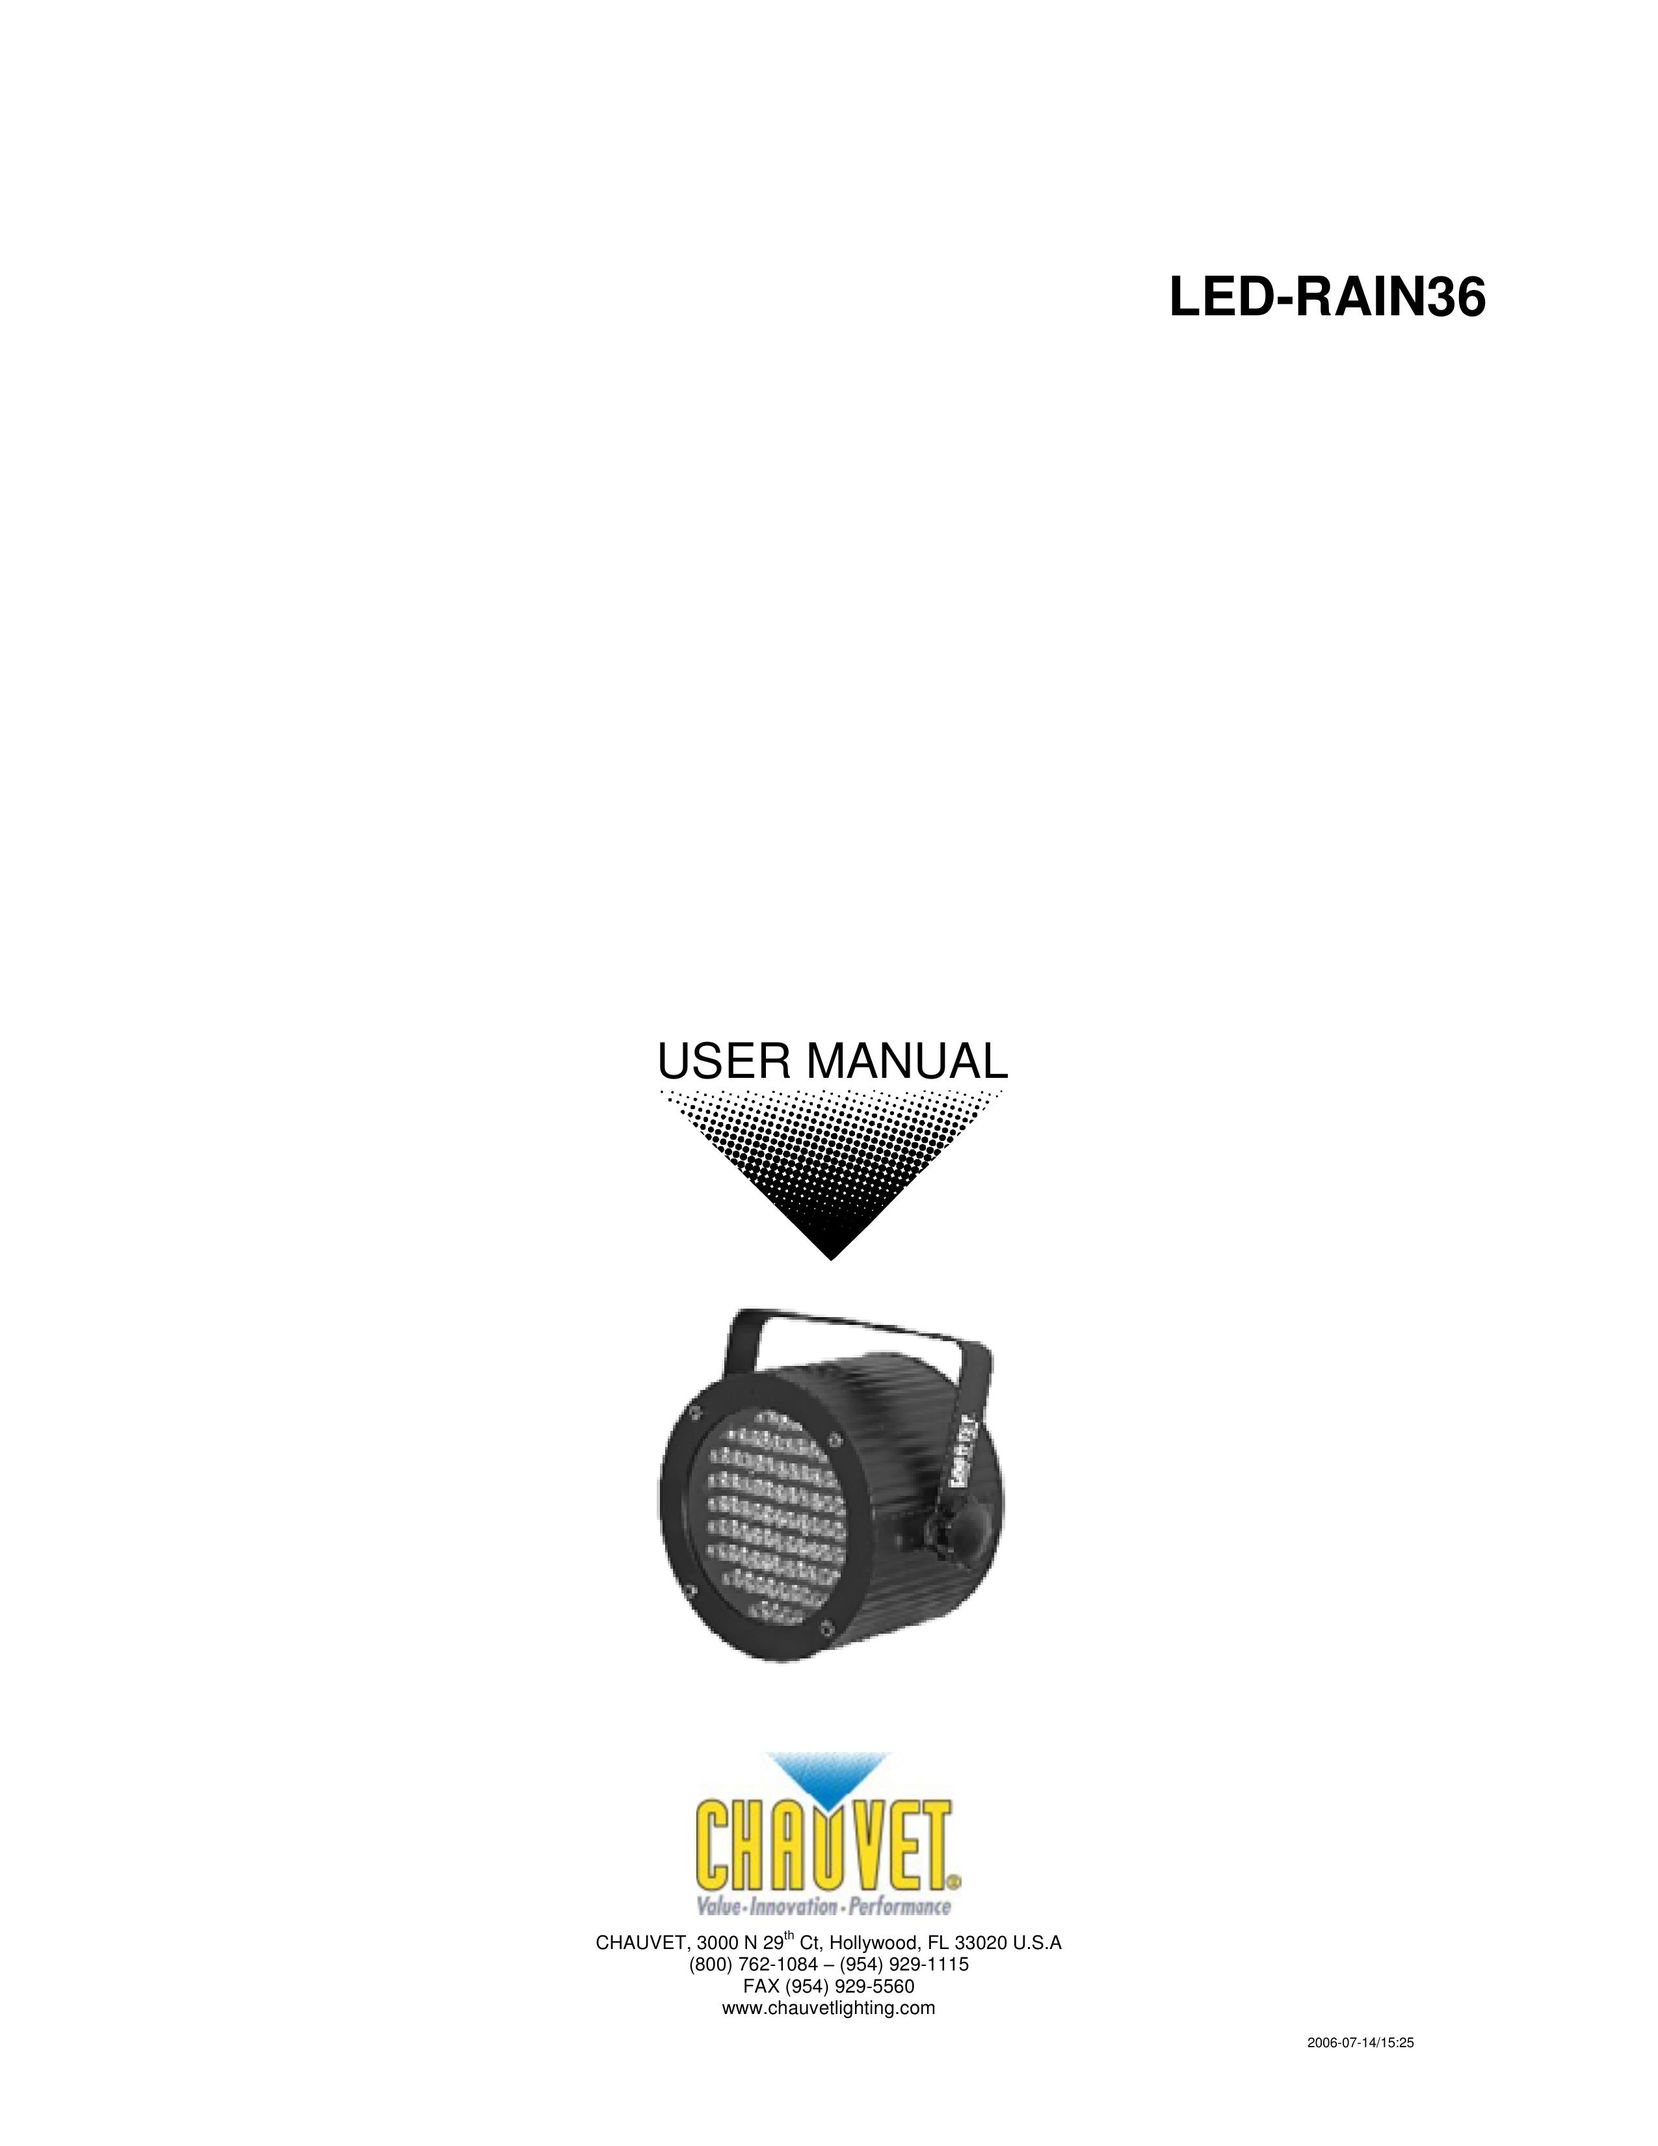 Chauvet LED-RAIN36 Work Light User Manual